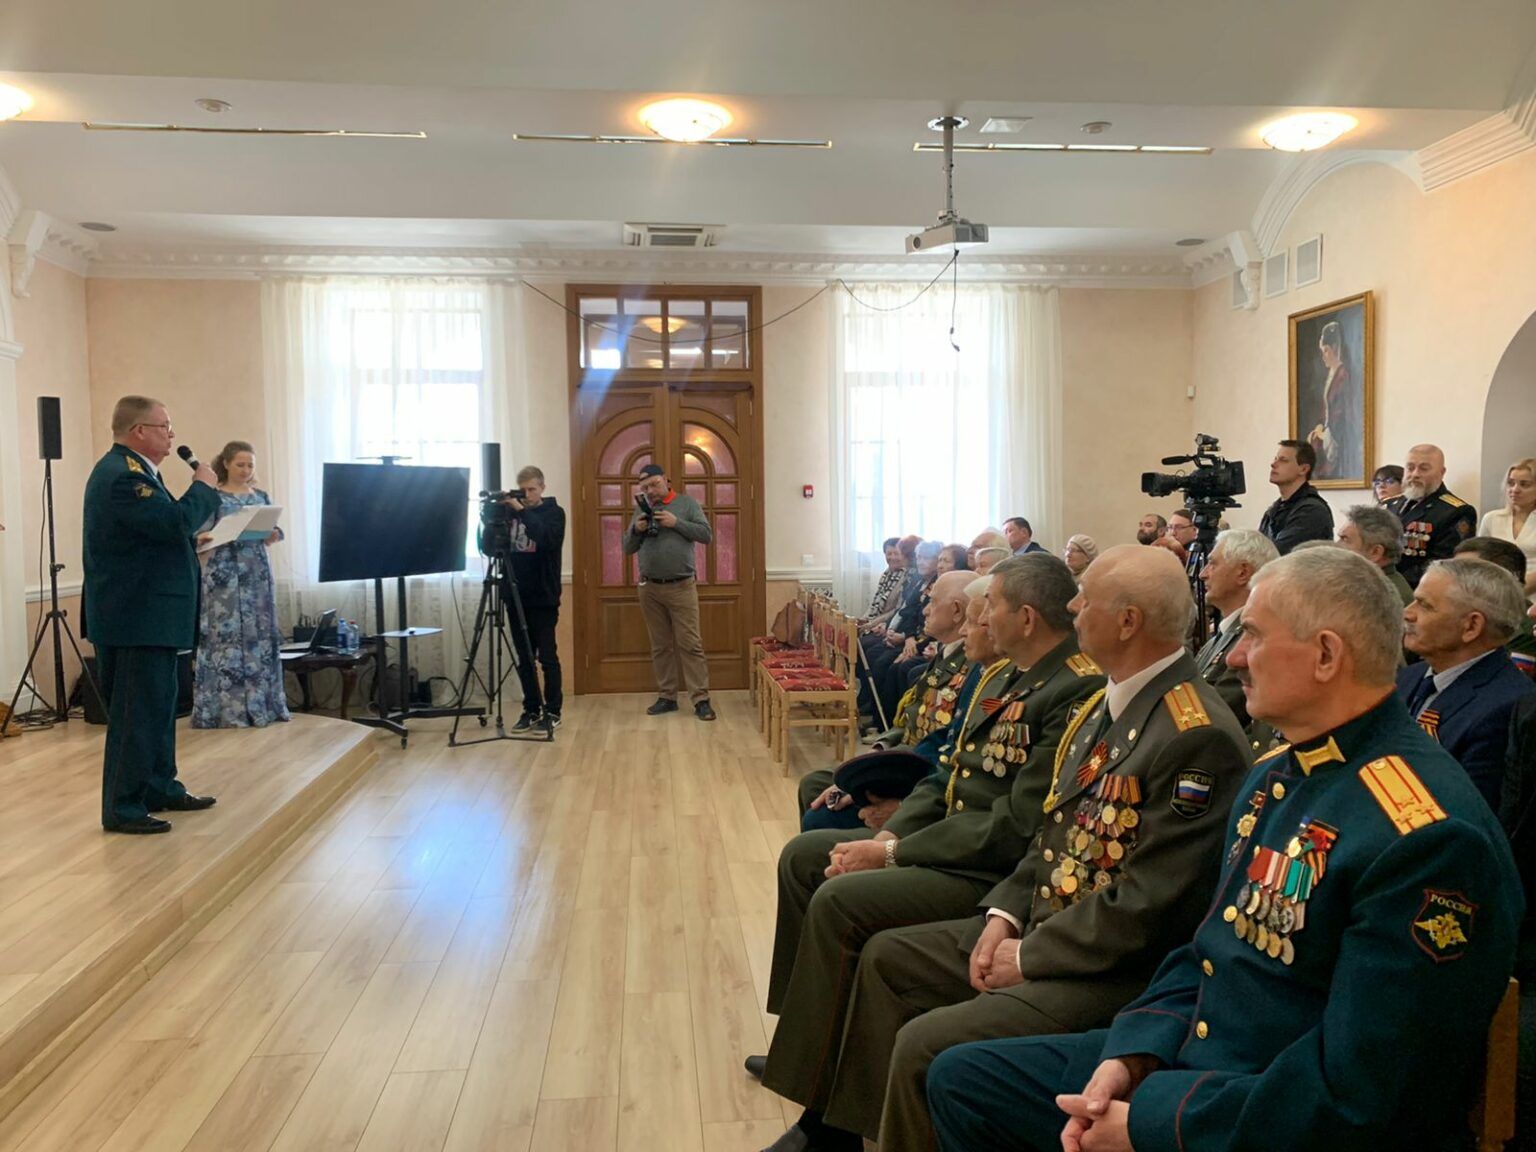 Поздравление ветеранов Великой Отечественной войны